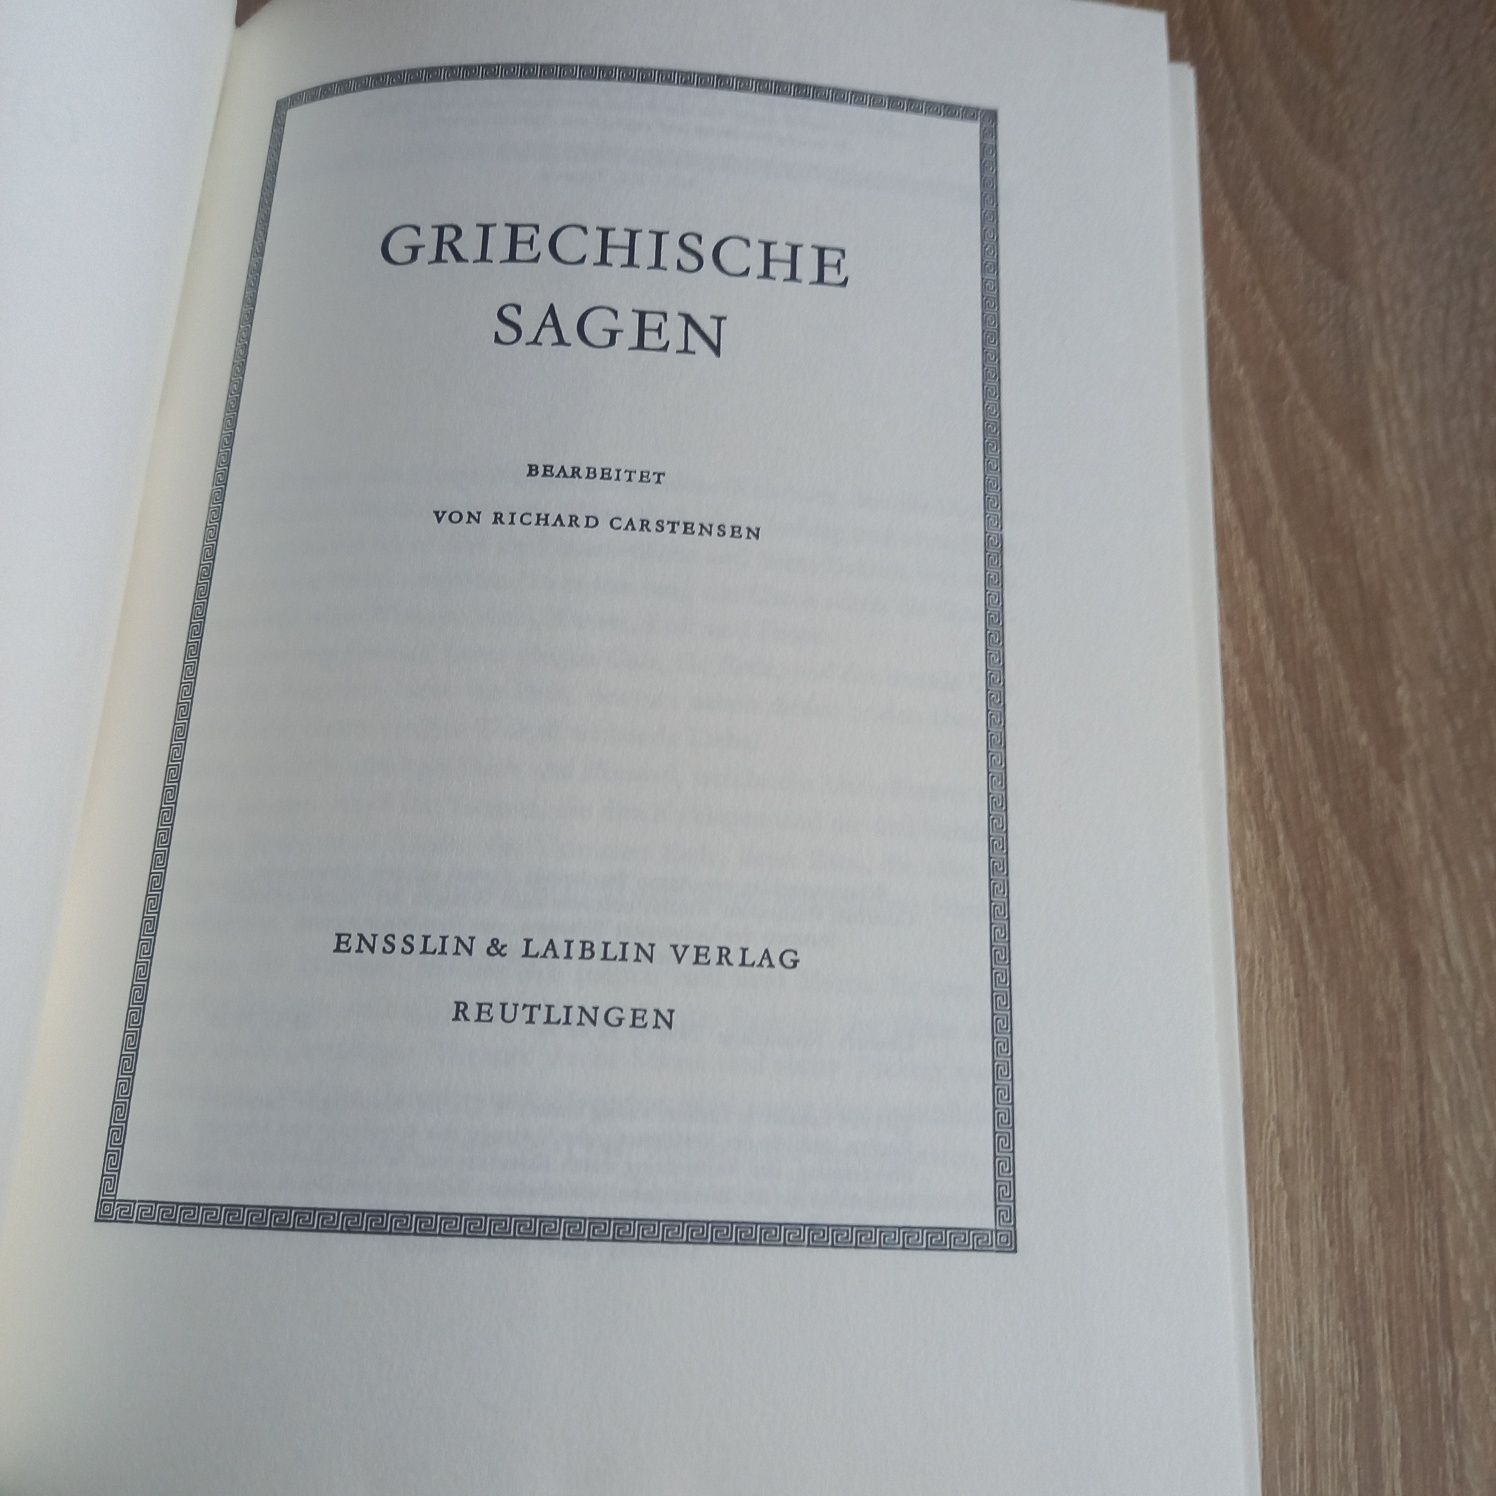 Książka Griechische Sagen niemieckojęzyczna